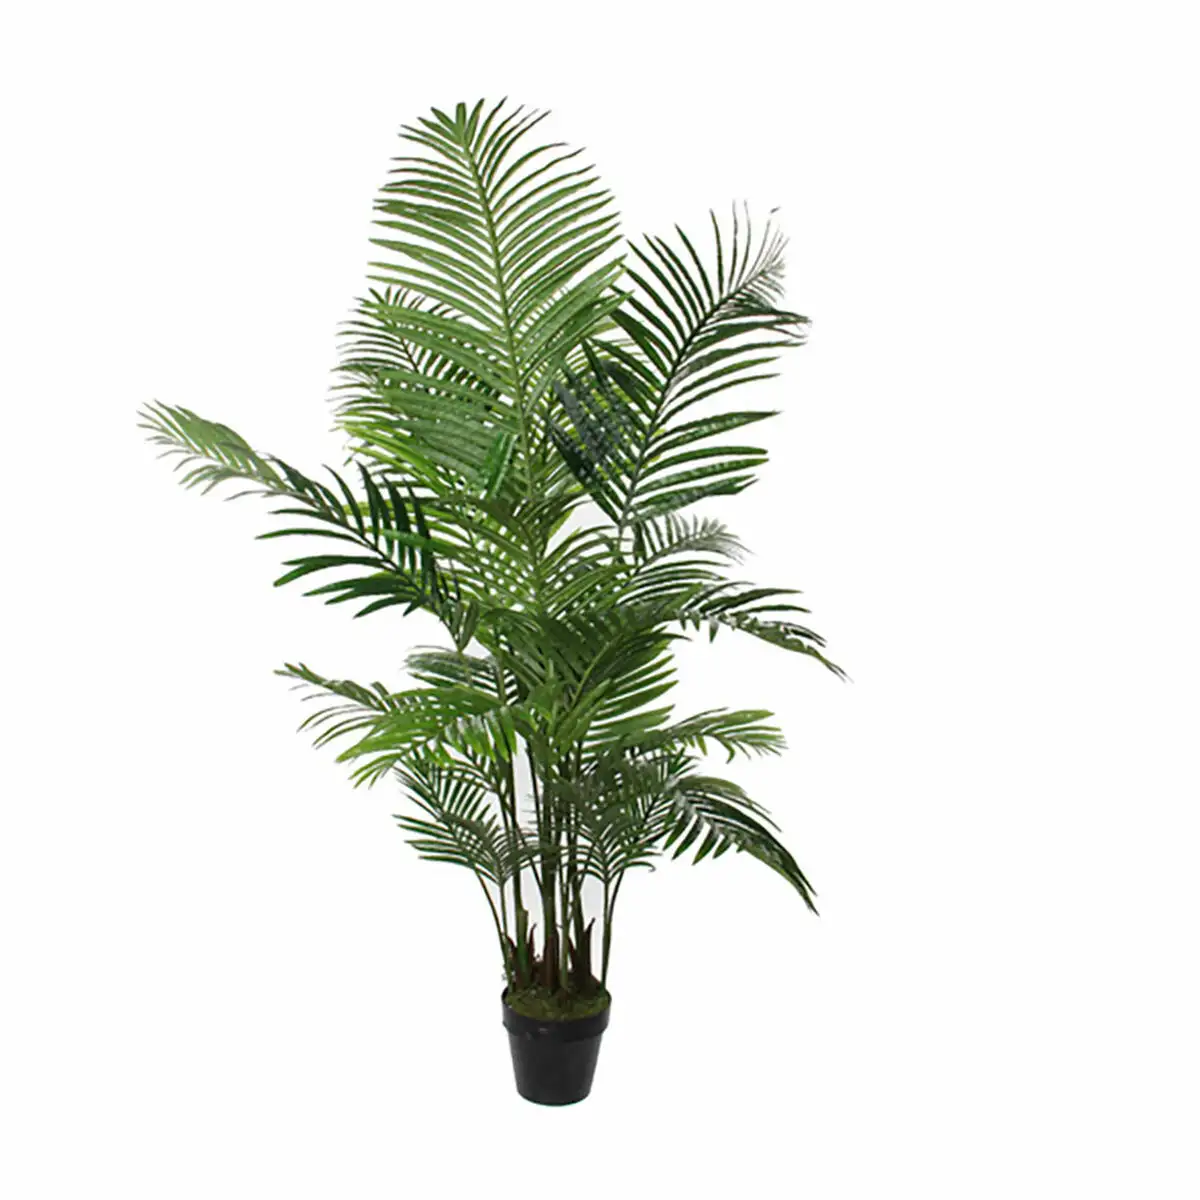 Plante decorative mica decorations vert palmier 80 x 160 cm _1421. DIAYTAR SENEGAL - Votre Boutique en Ligne, Votre Choix Illimité. Parcourez nos rayons et découvrez des produits qui vous inspirent, de la mode à la maison et bien plus.